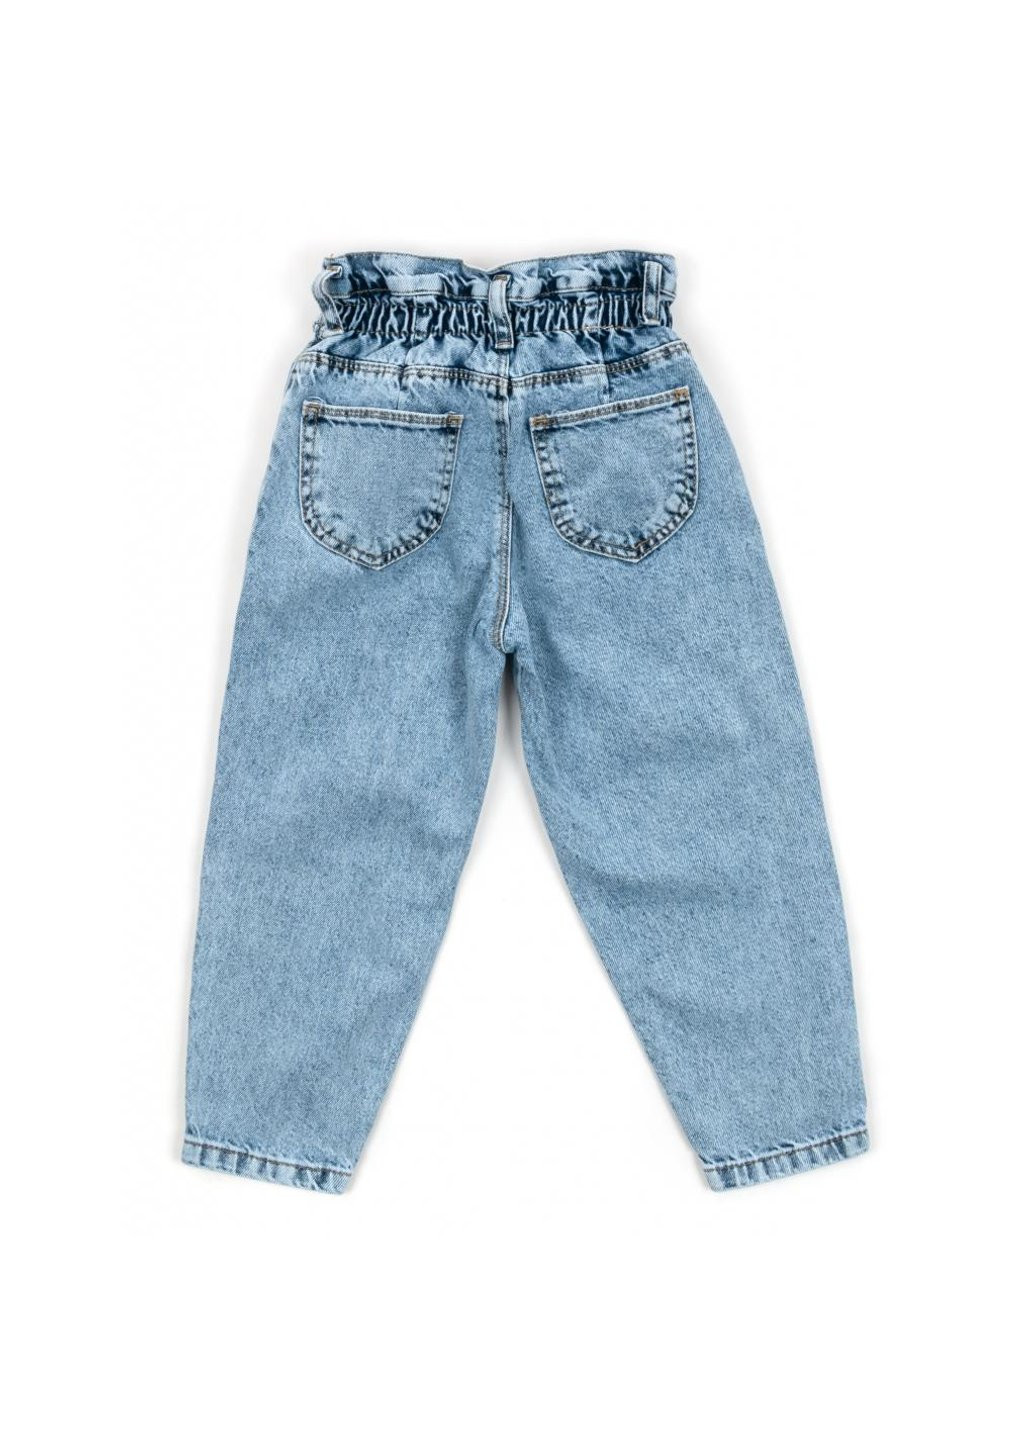 Голубые демисезонные джинсы с высокой талией (16011-116g-blue) Breeze